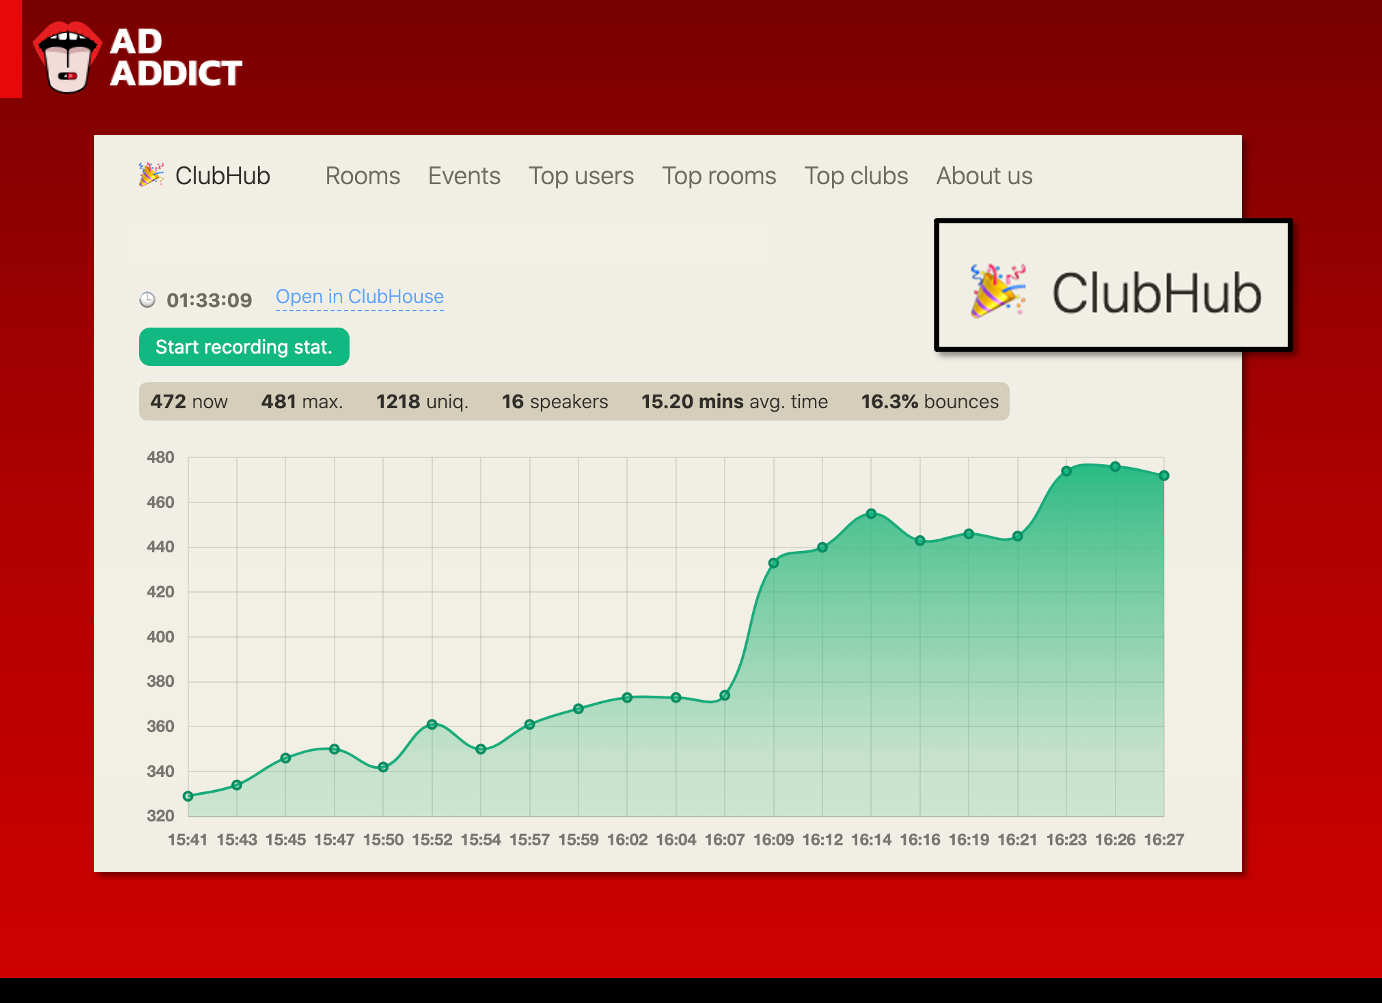 ทำความรู้จัก ClubHub เว็บไซต์ส่องสถิติของ Clubhouse - Ad Addict